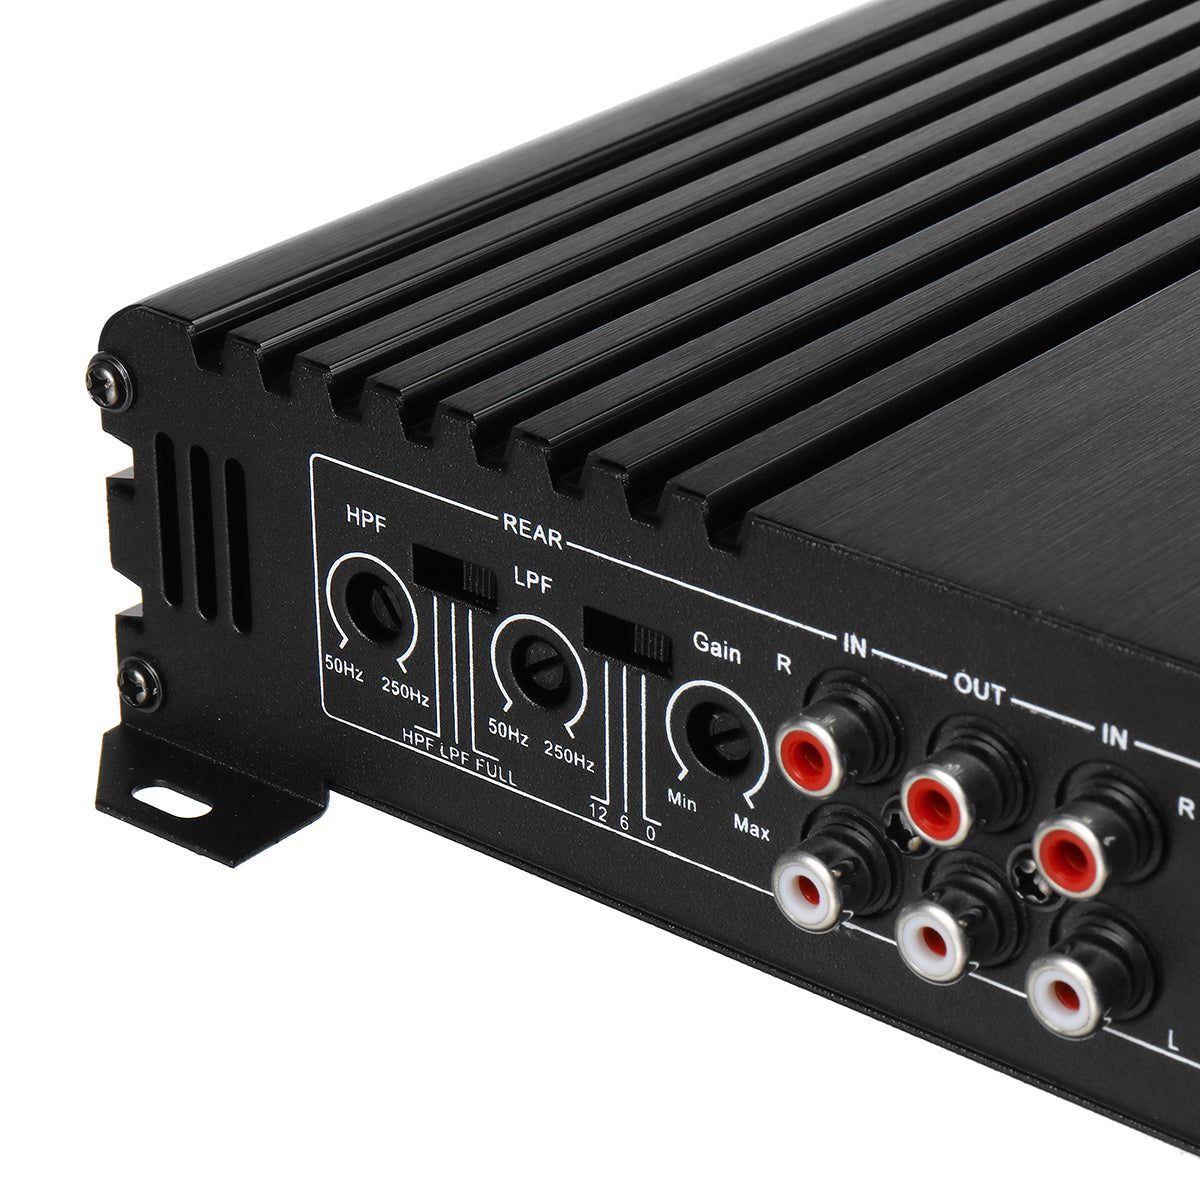 K2900 4 Channel 1700W Car Audio Power Amplifier Slim Subwoofer AMP DC 12V - Auto GoShop